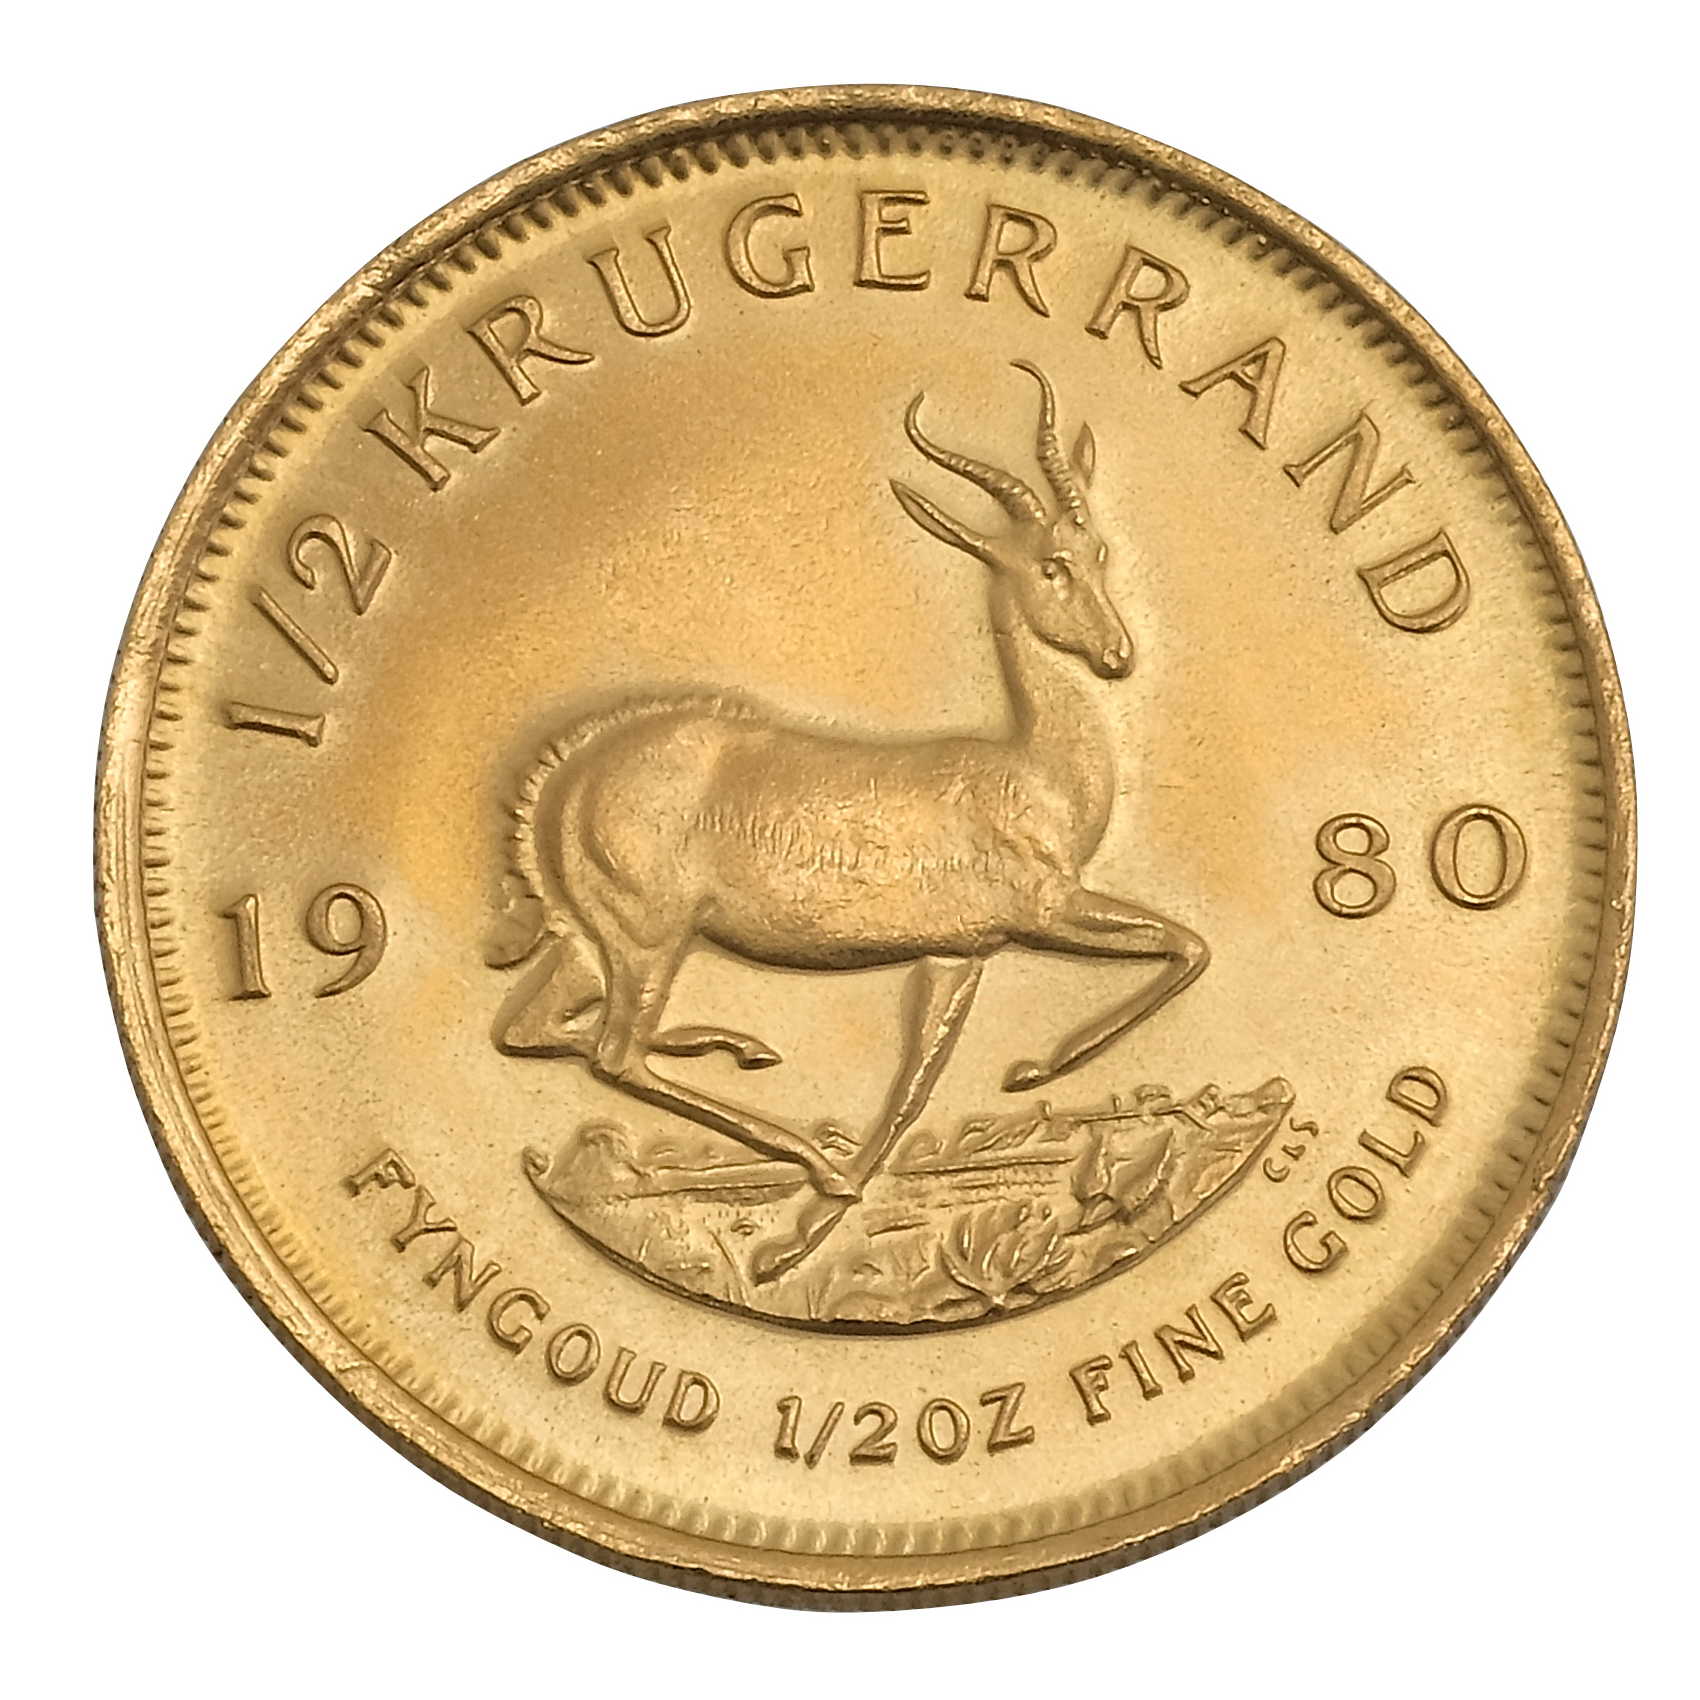 1/2 Oz Gold Krugerrand Coin (Best Value)